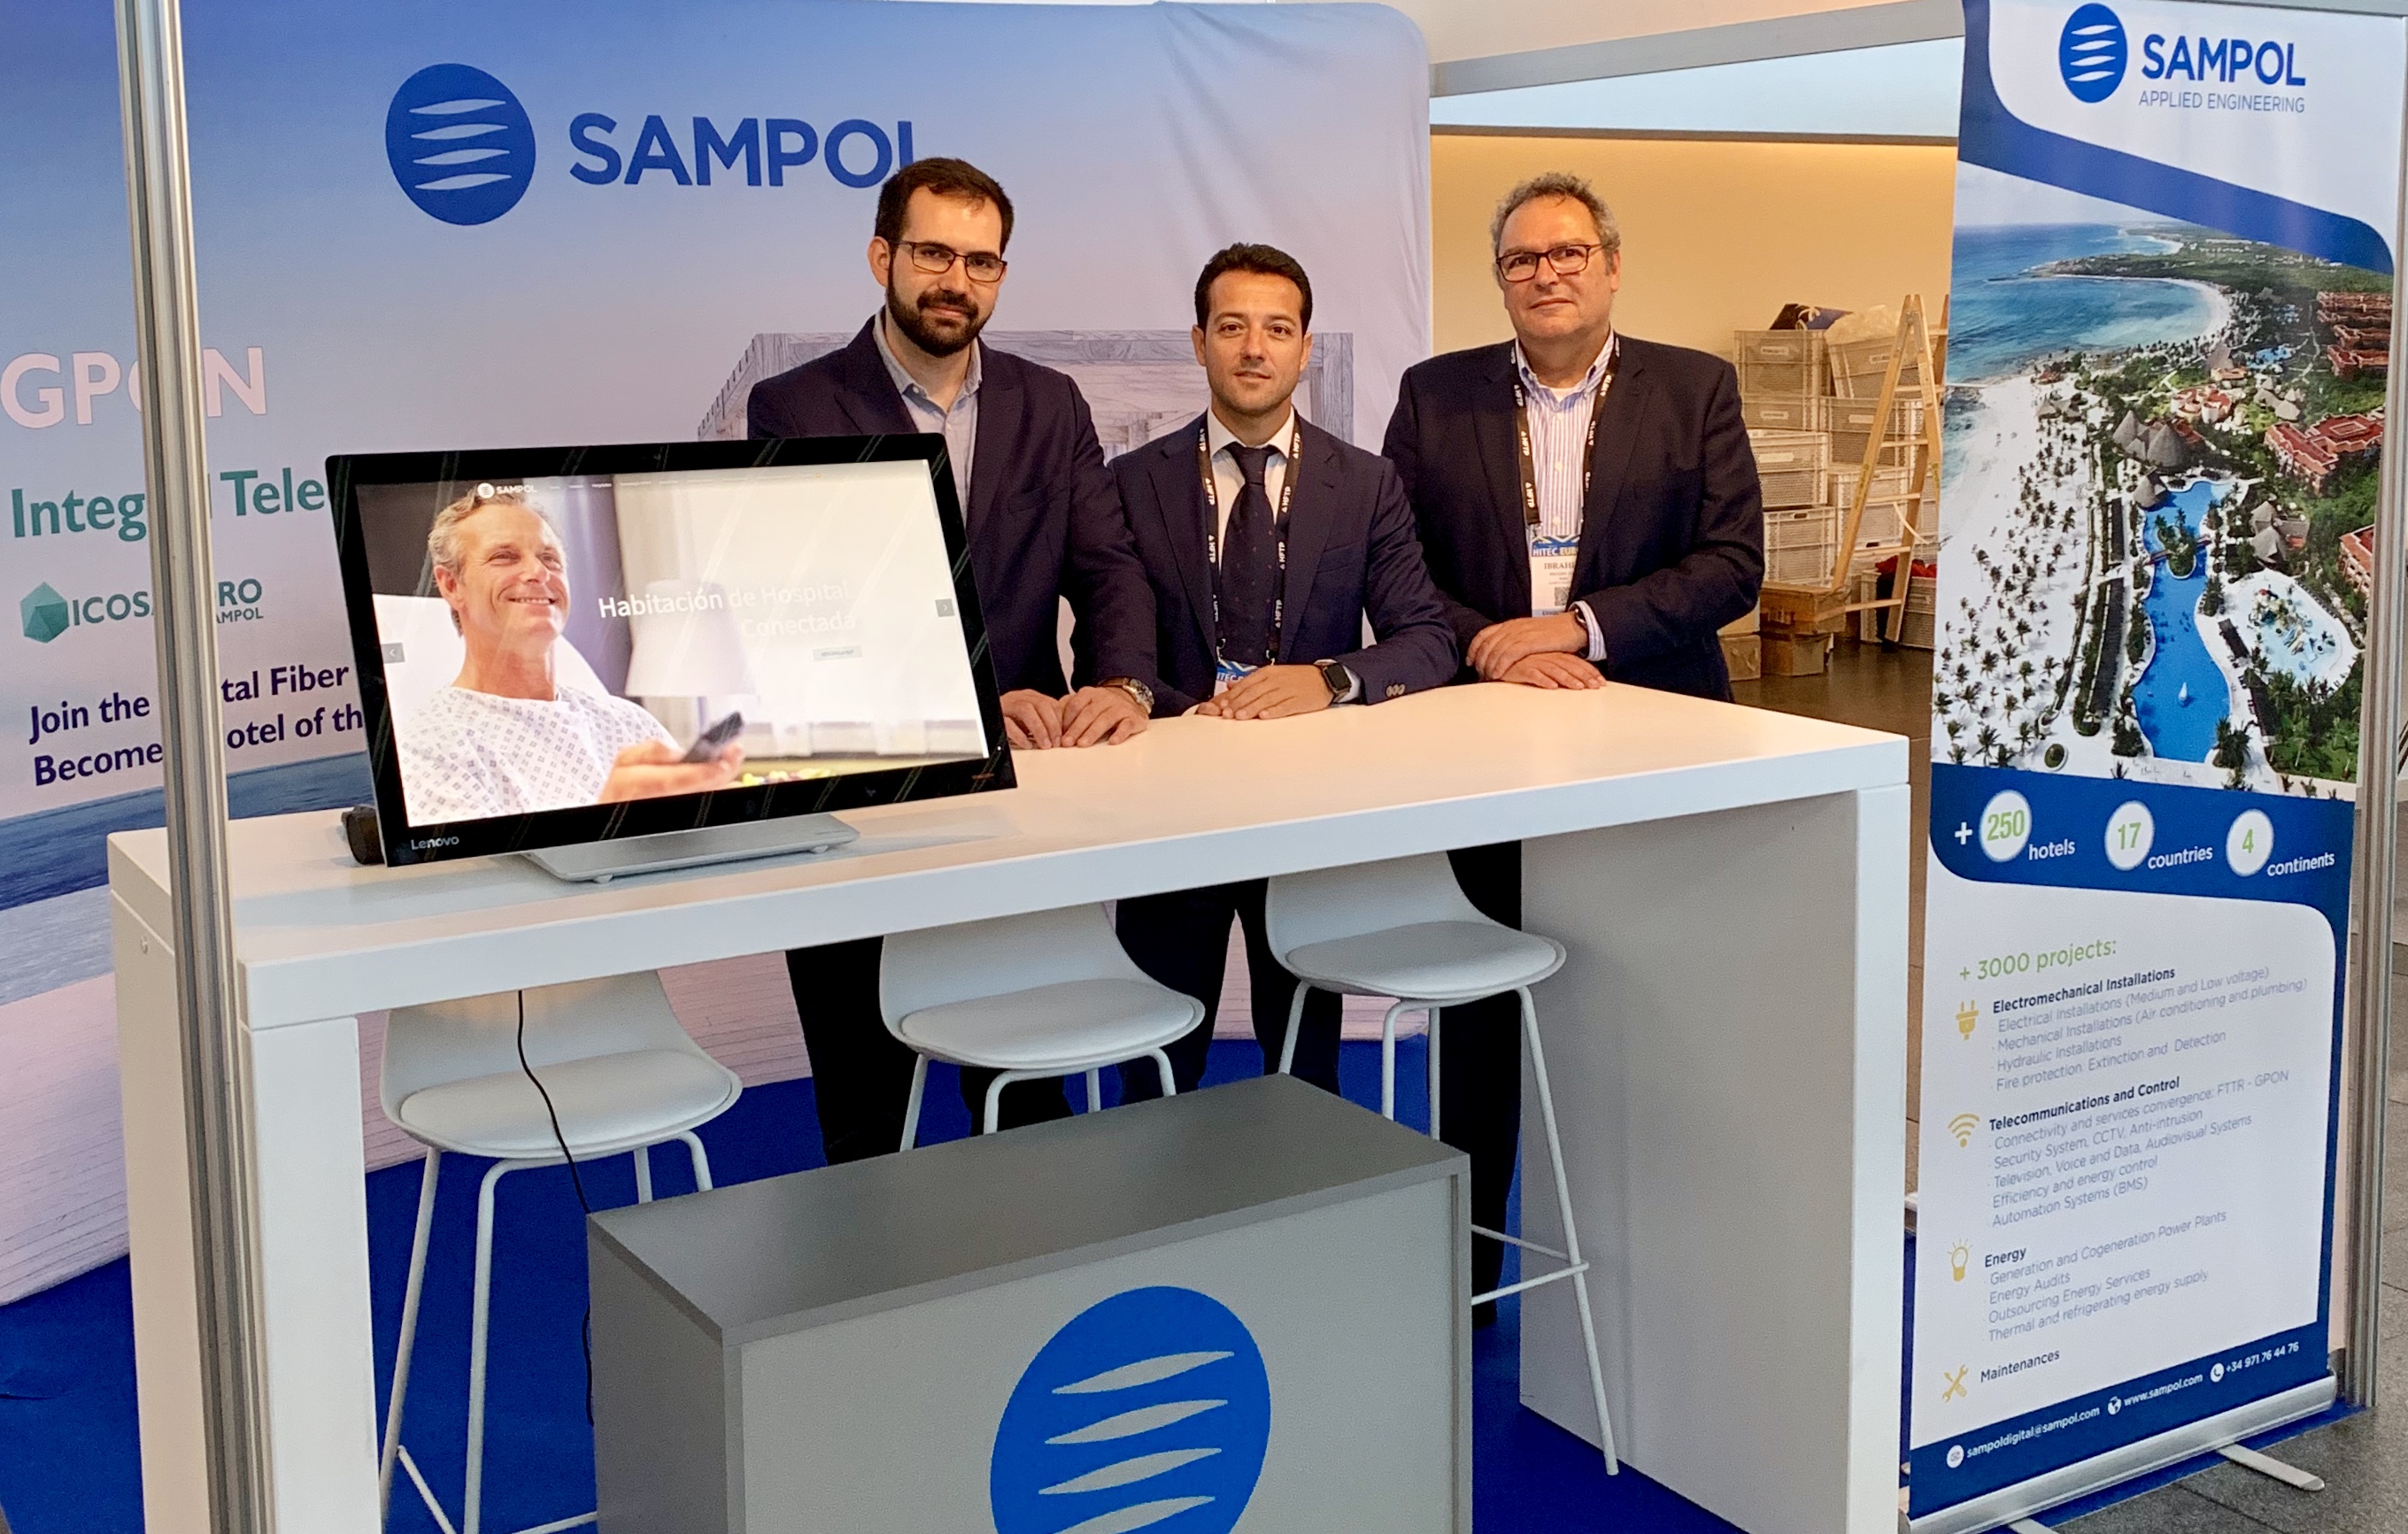 (Español) Grupo Sampol participa en feria de tecnología hotelera HITEC 2019